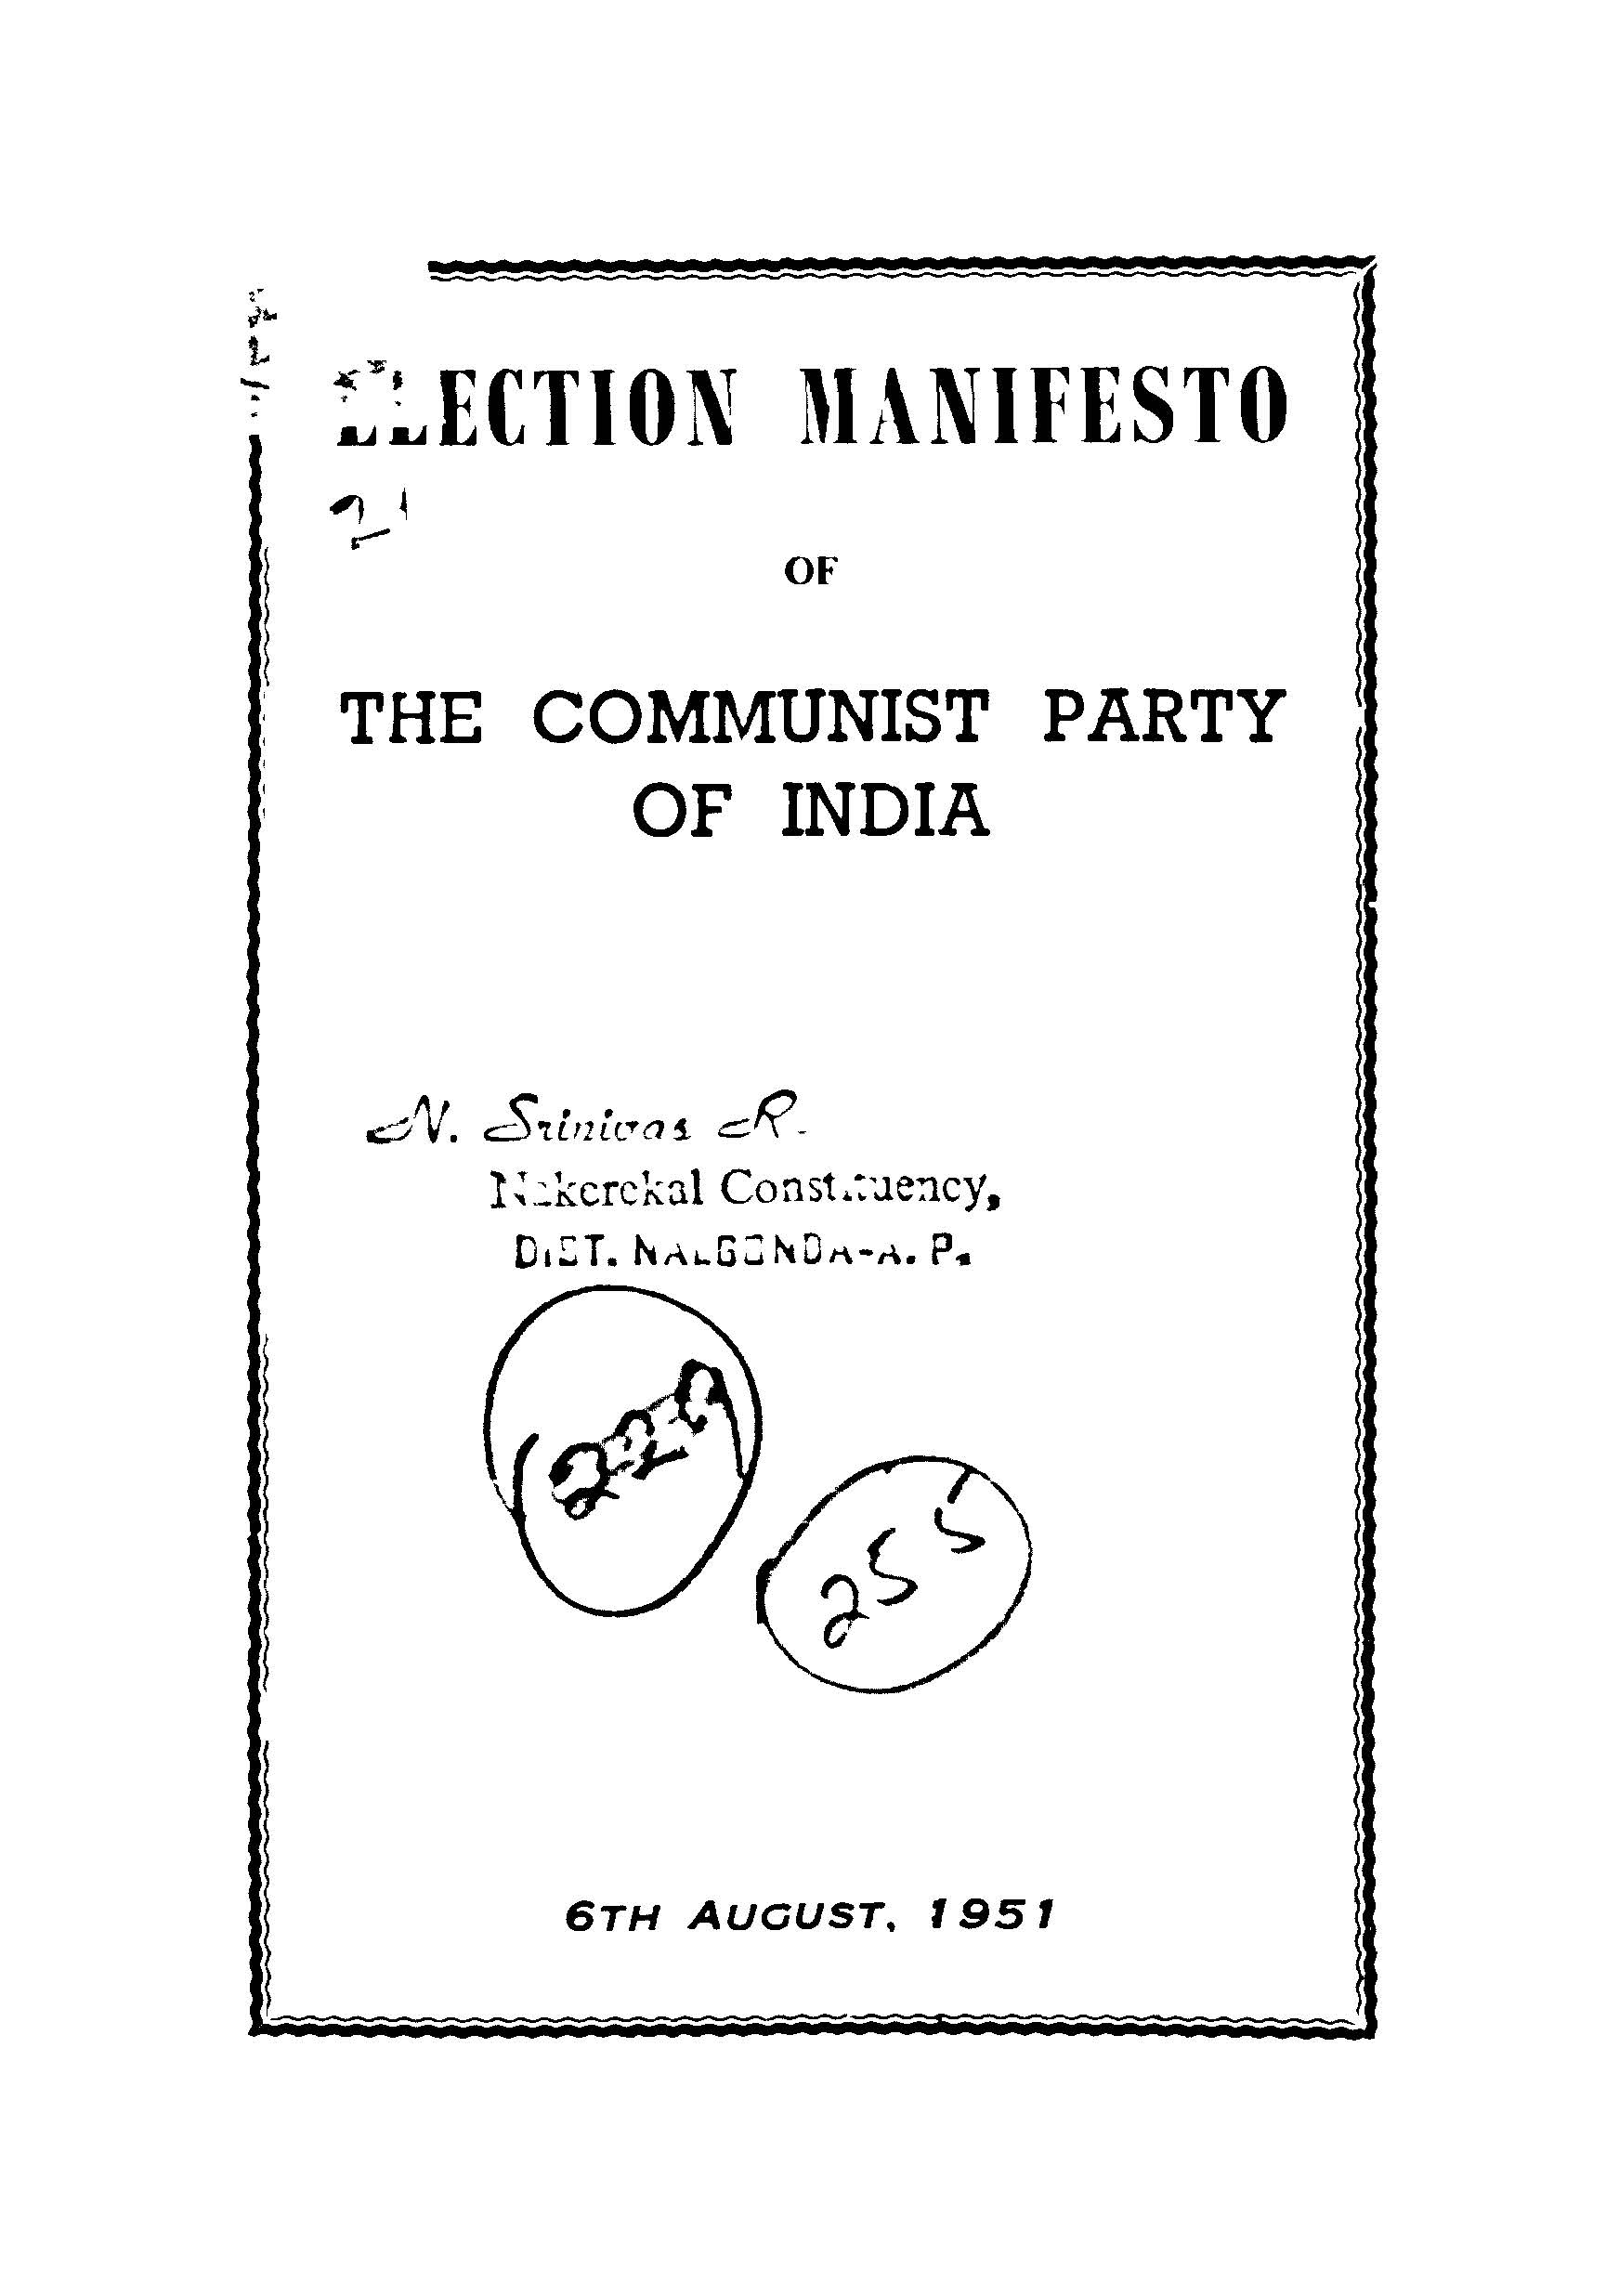 Electione Manifesto Of The CPI